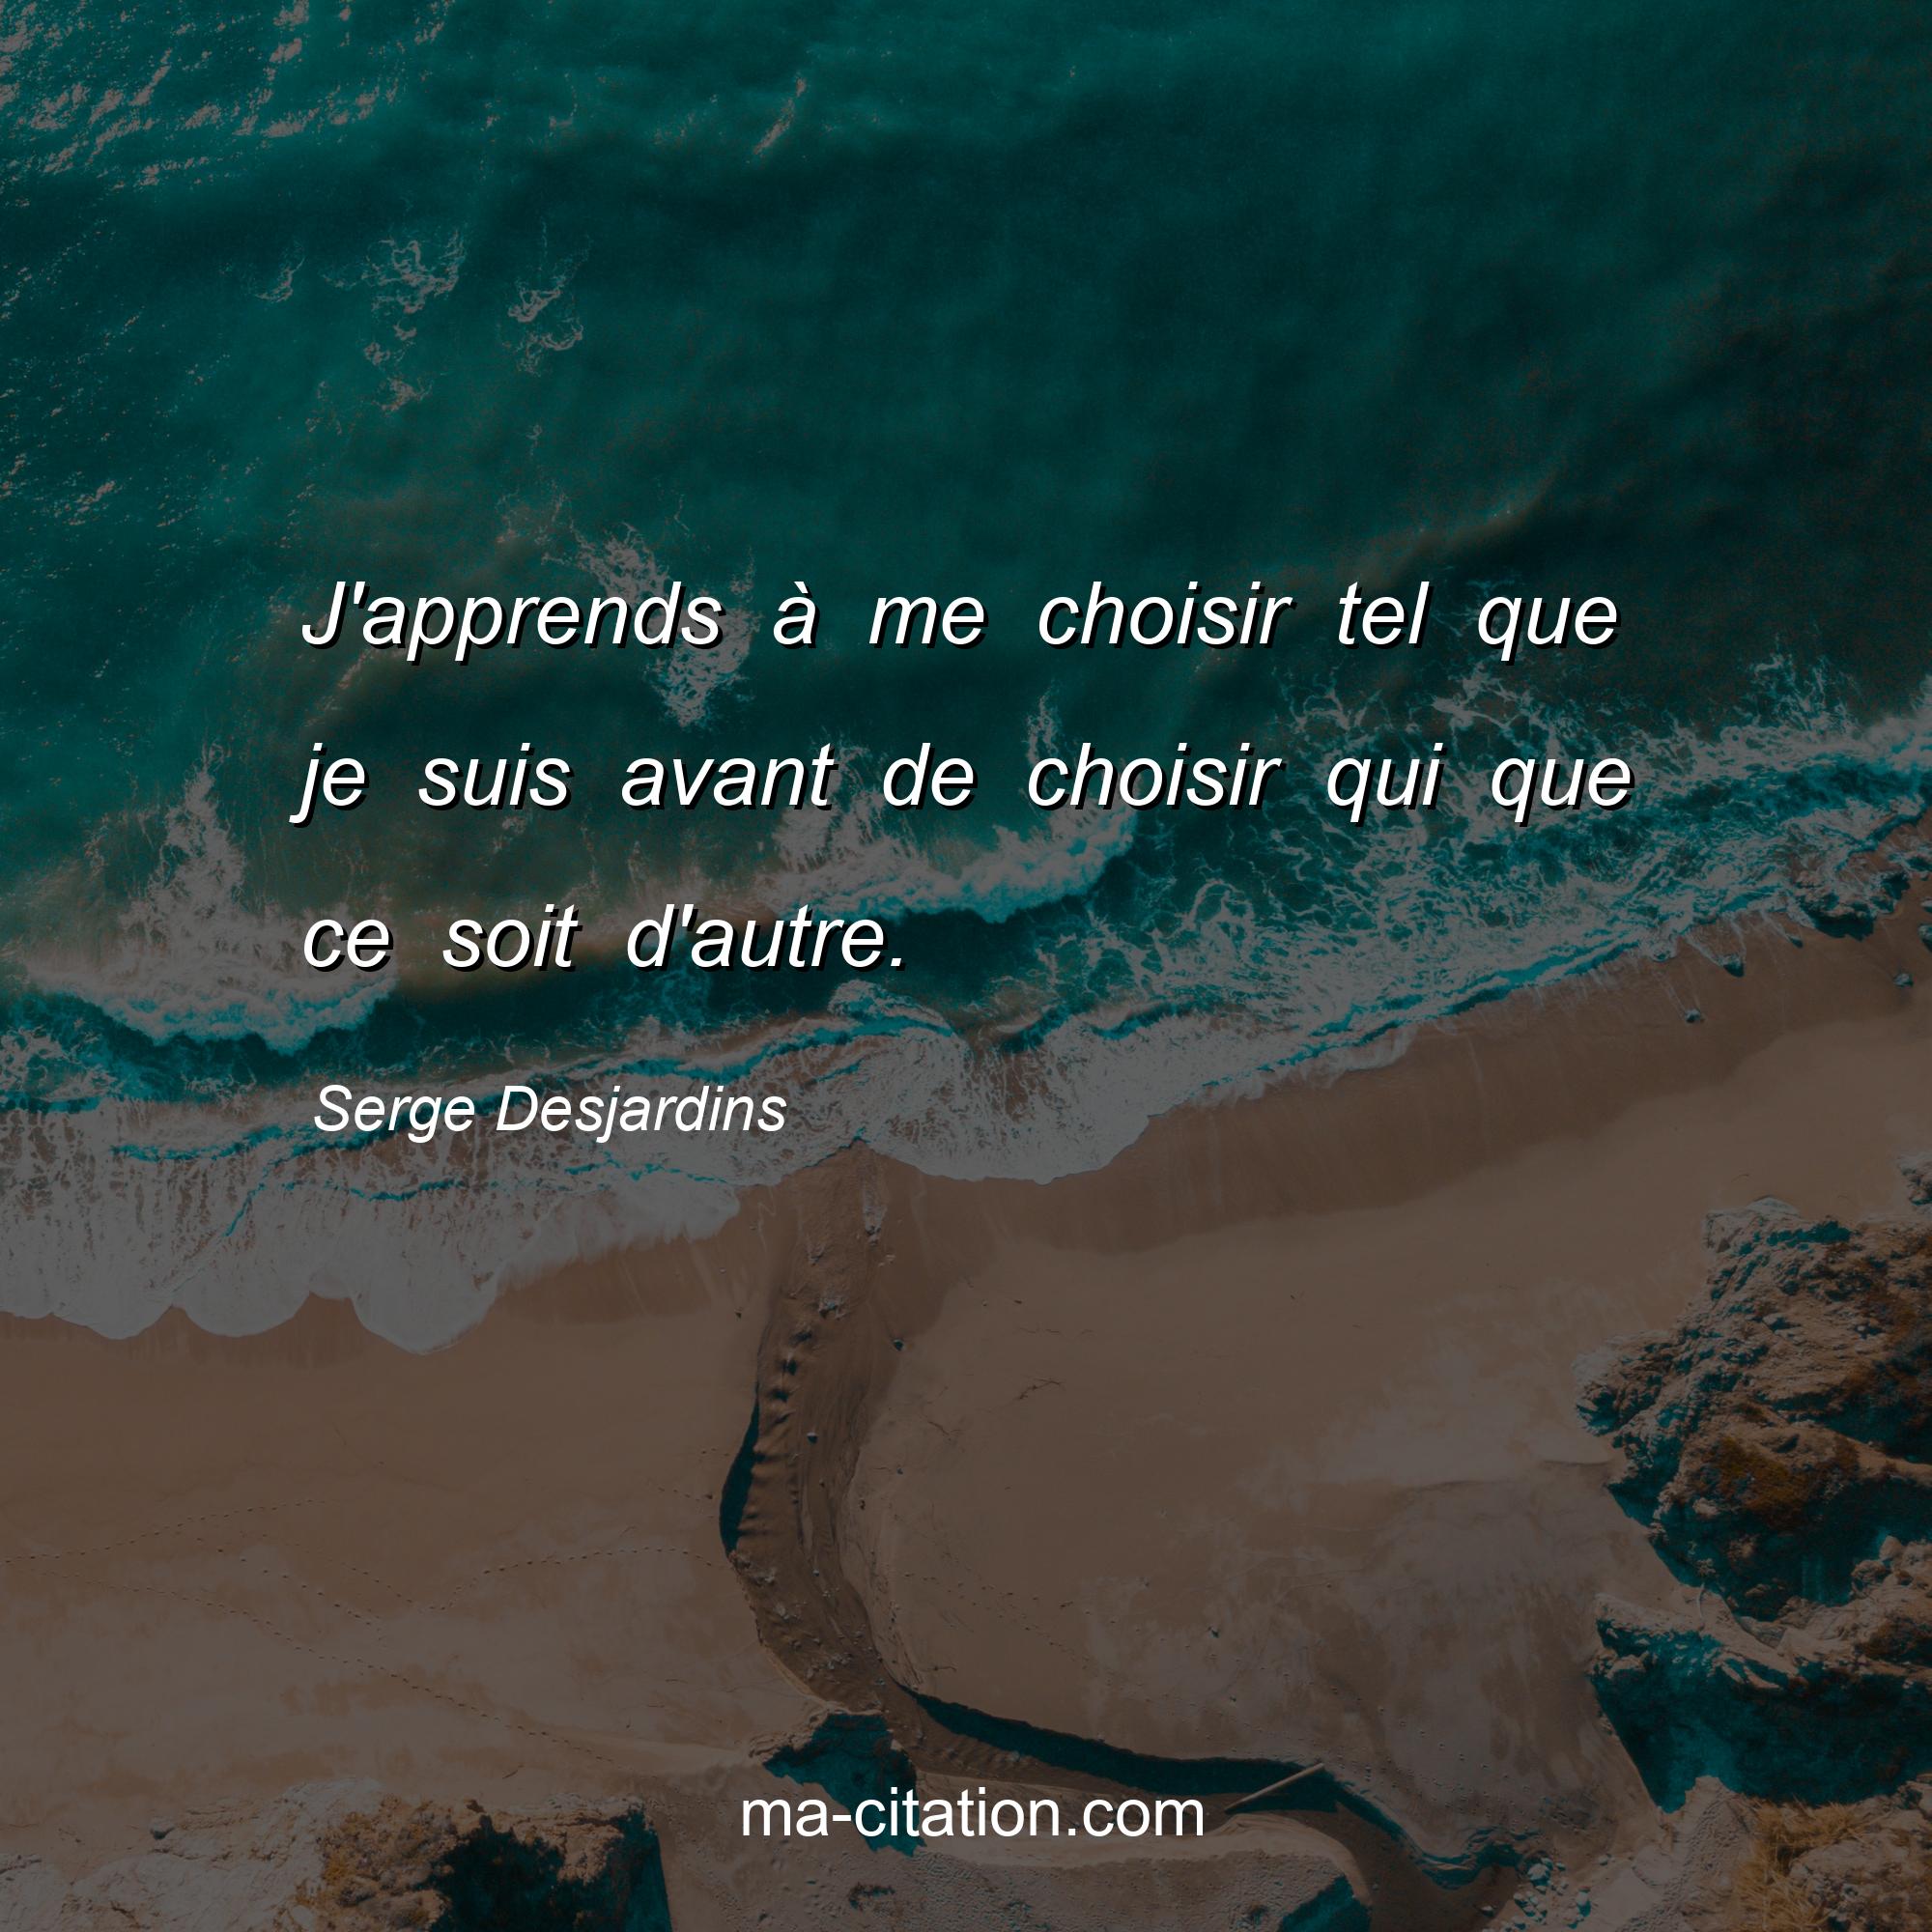 Serge Desjardins : J'apprends à me choisir tel que je suis avant de choisir qui que ce soit d'autre.